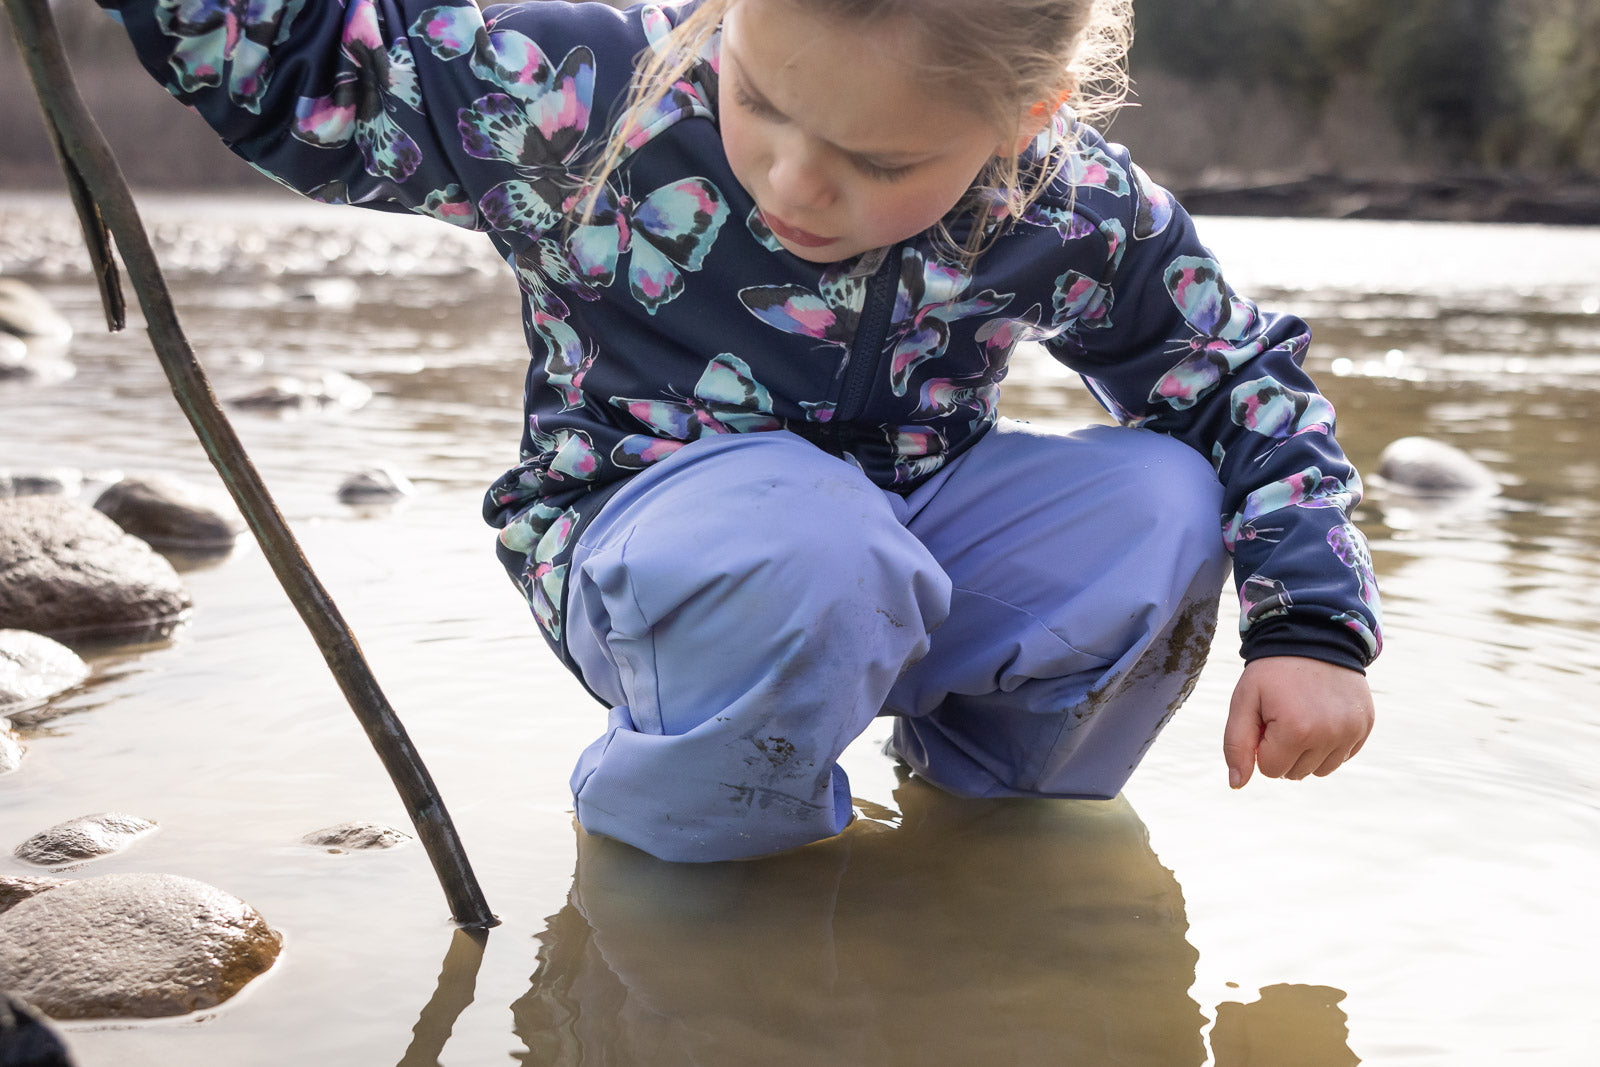 Childrens Waterproof Pants & Overalls